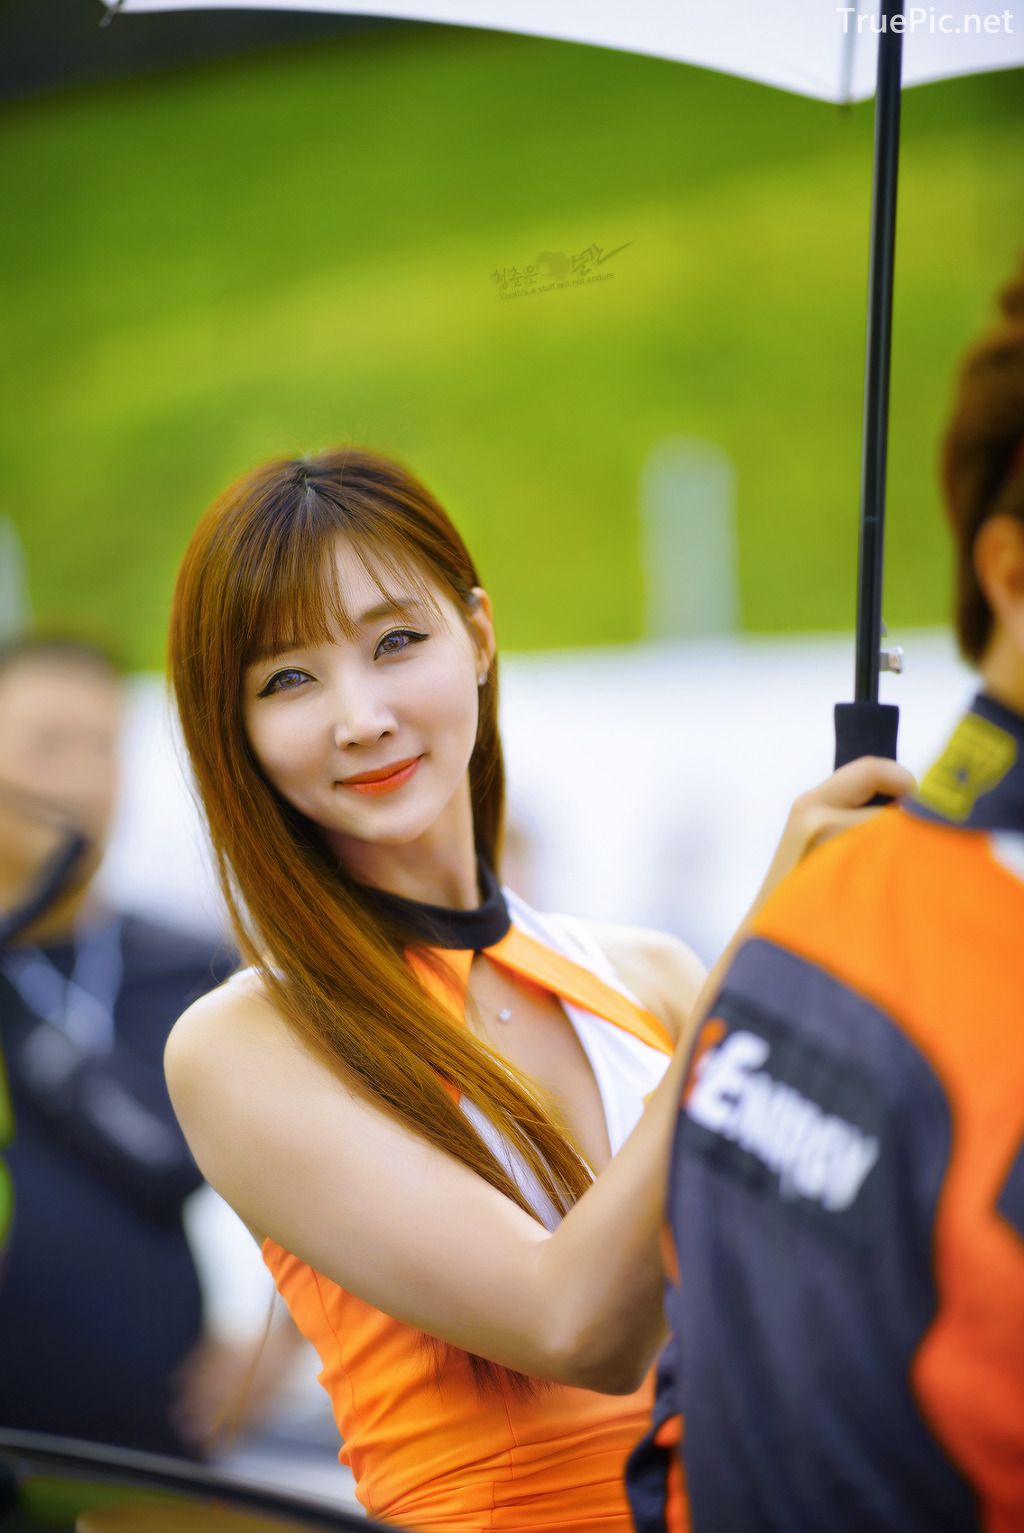 Image-Korean-Racing-Model-Lee-Yoo-Eun-Incheon-KoreaTuning-Festival-Show-TruePic.net- Picture-17